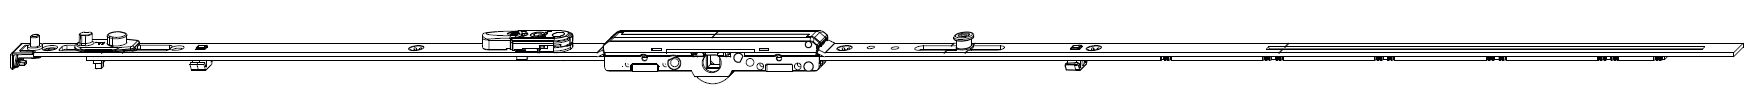 MAICO -  Cremonese MULTI-MATIC anta ribalta antieffrazione altezza maniglia fissa con piedino e dss per ribalta e bilanciere - gr / dim. 1950 - entrata 6,5 - alt. man. 1050 - lbb/hbb 1701 - 1950